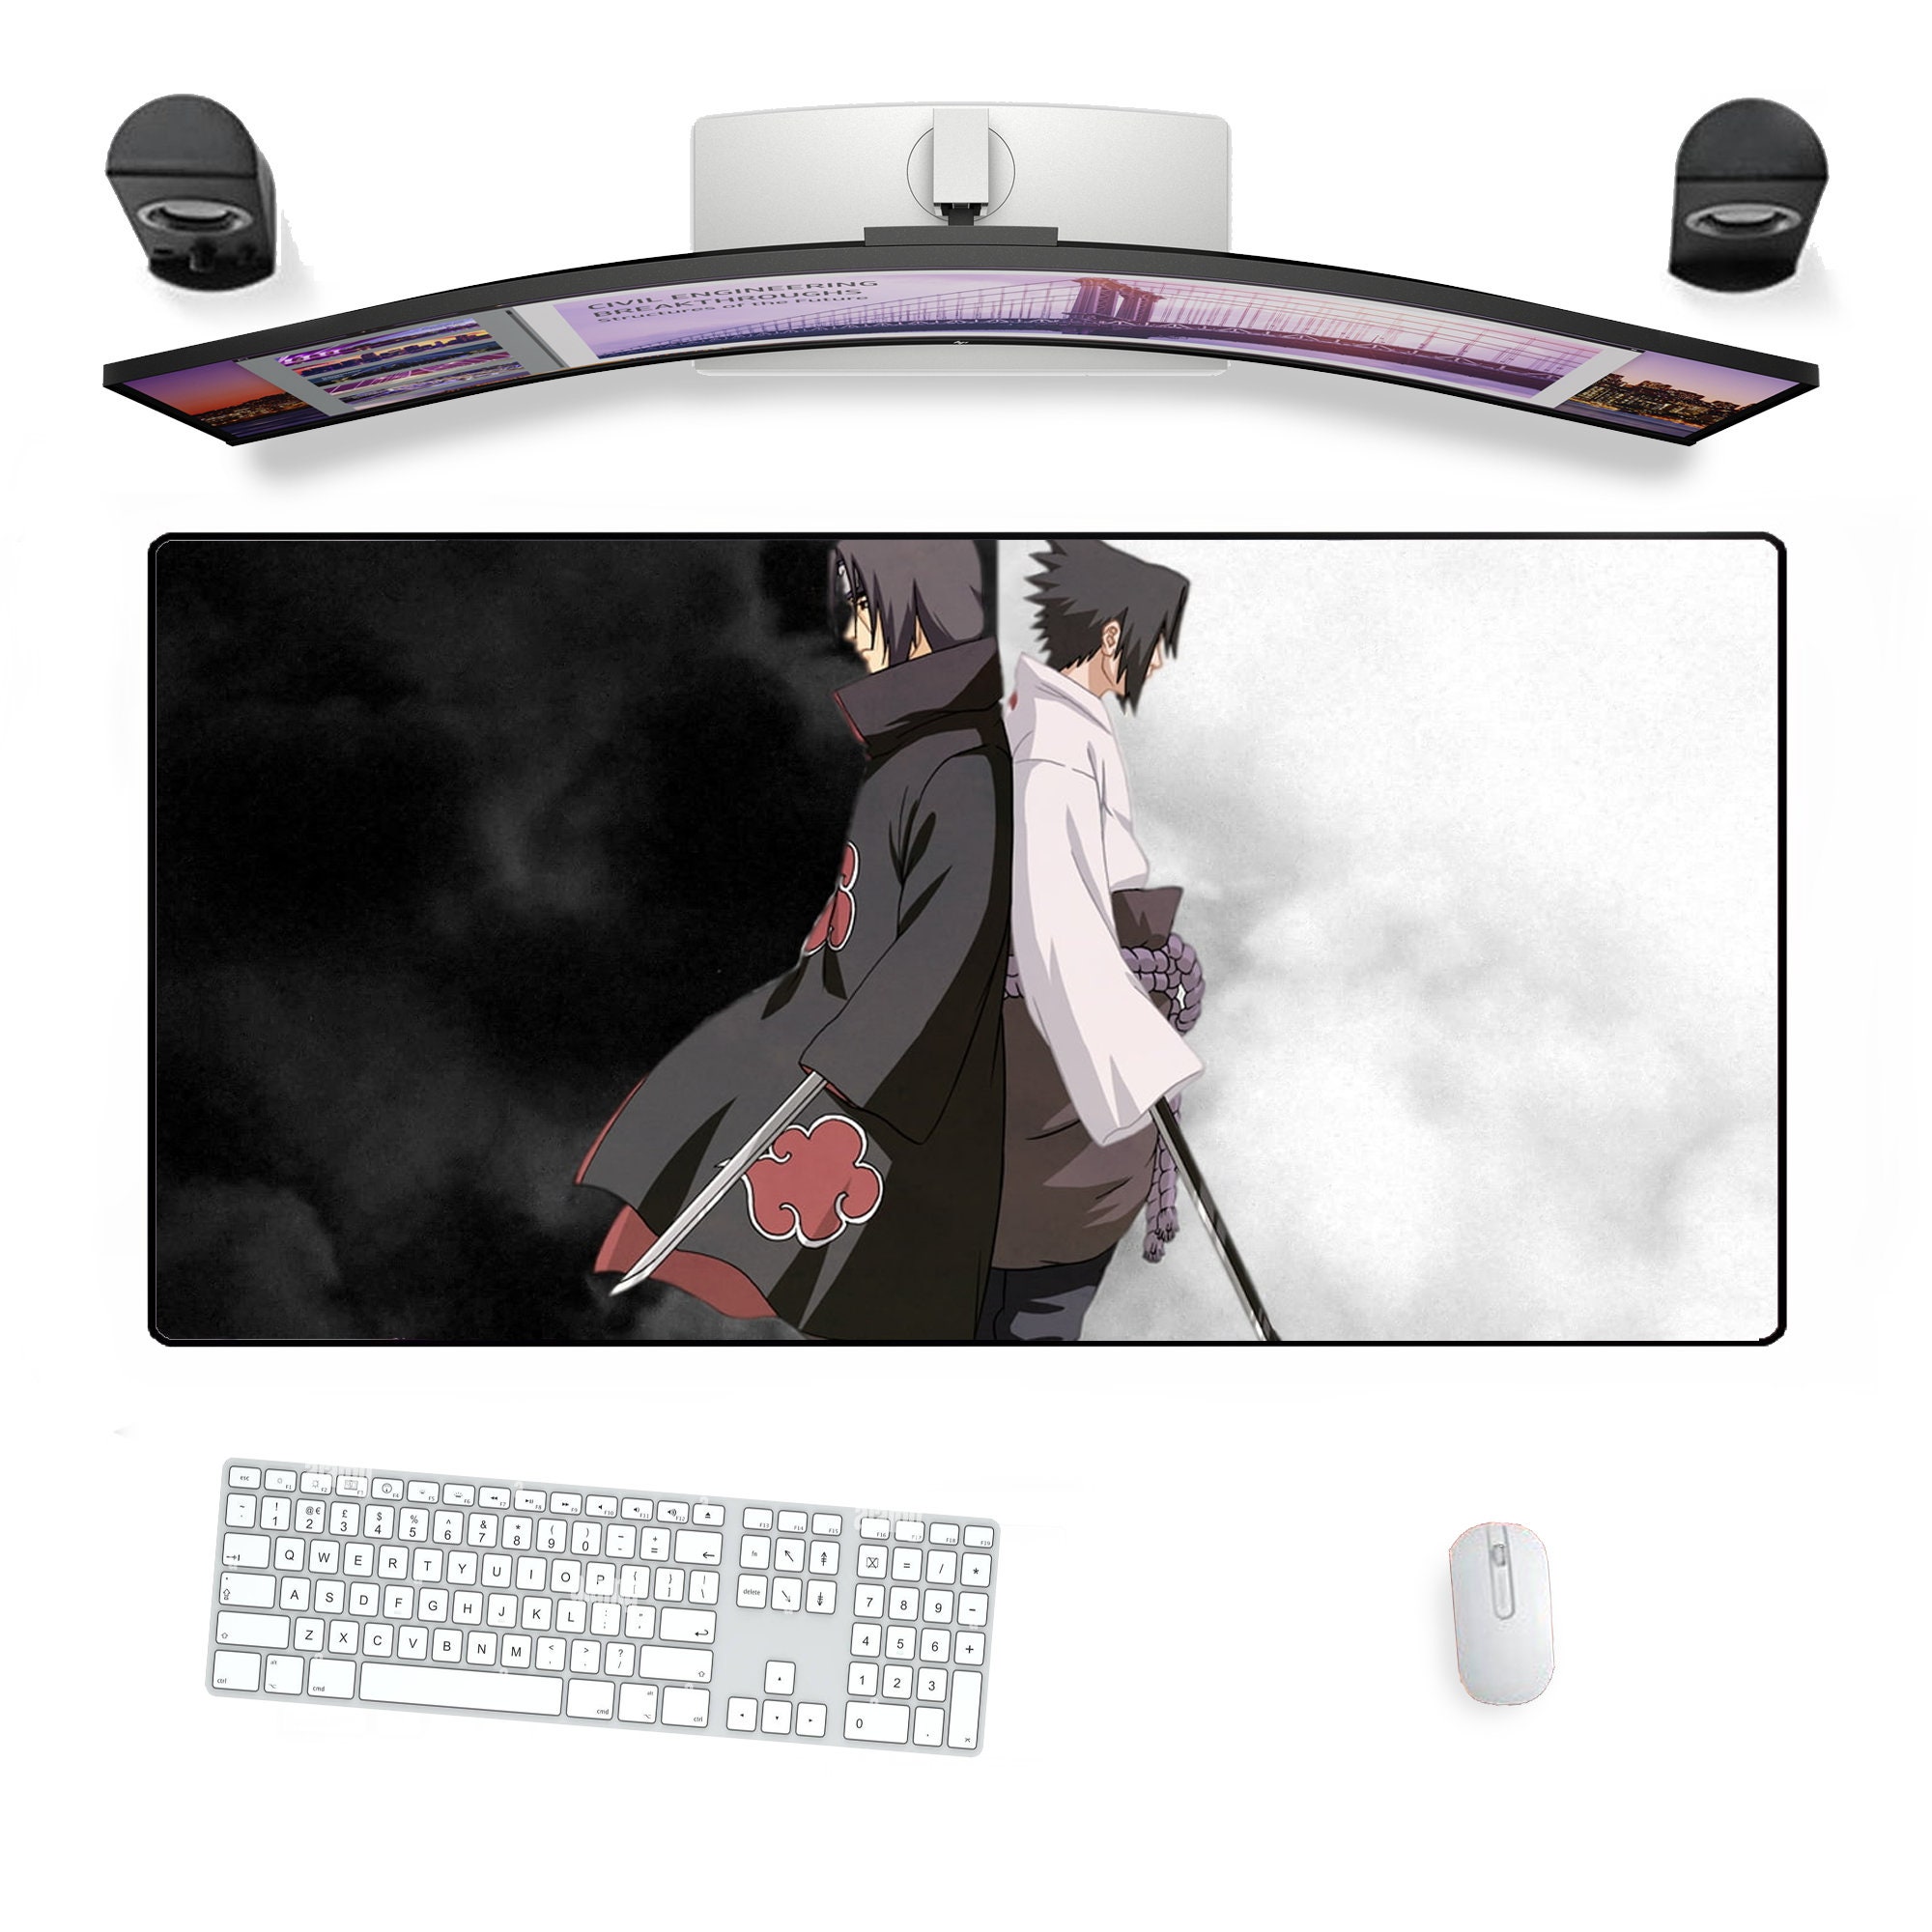 Kaguyasama Fujiwara Chika Anime Mouse Pad Large Keyboard Mat Gaming Play  Mat  eBay